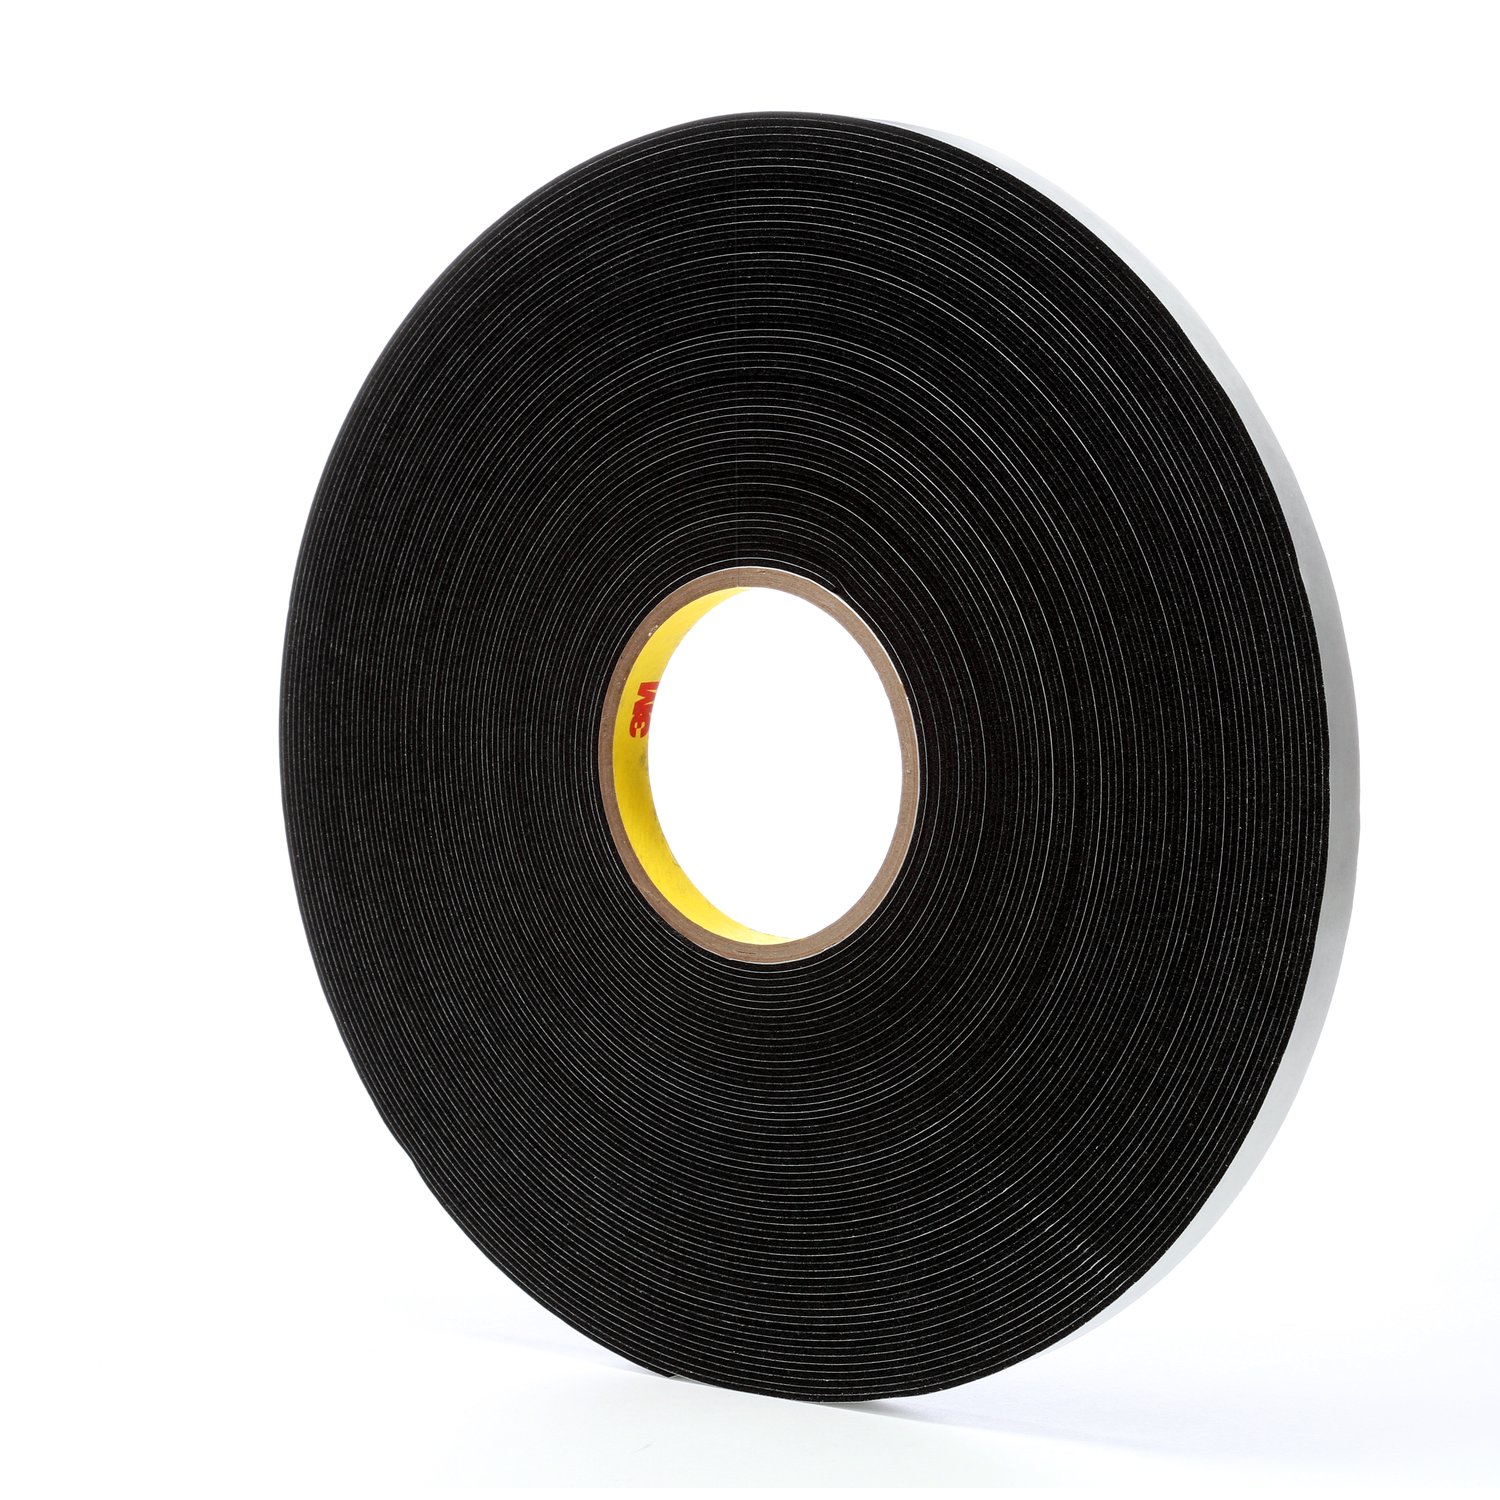 7000001102 - 3M Vinyl Foam Tape 4516, Black, 1/2 in x 36 yd, 62 mil, 18 rolls per
case